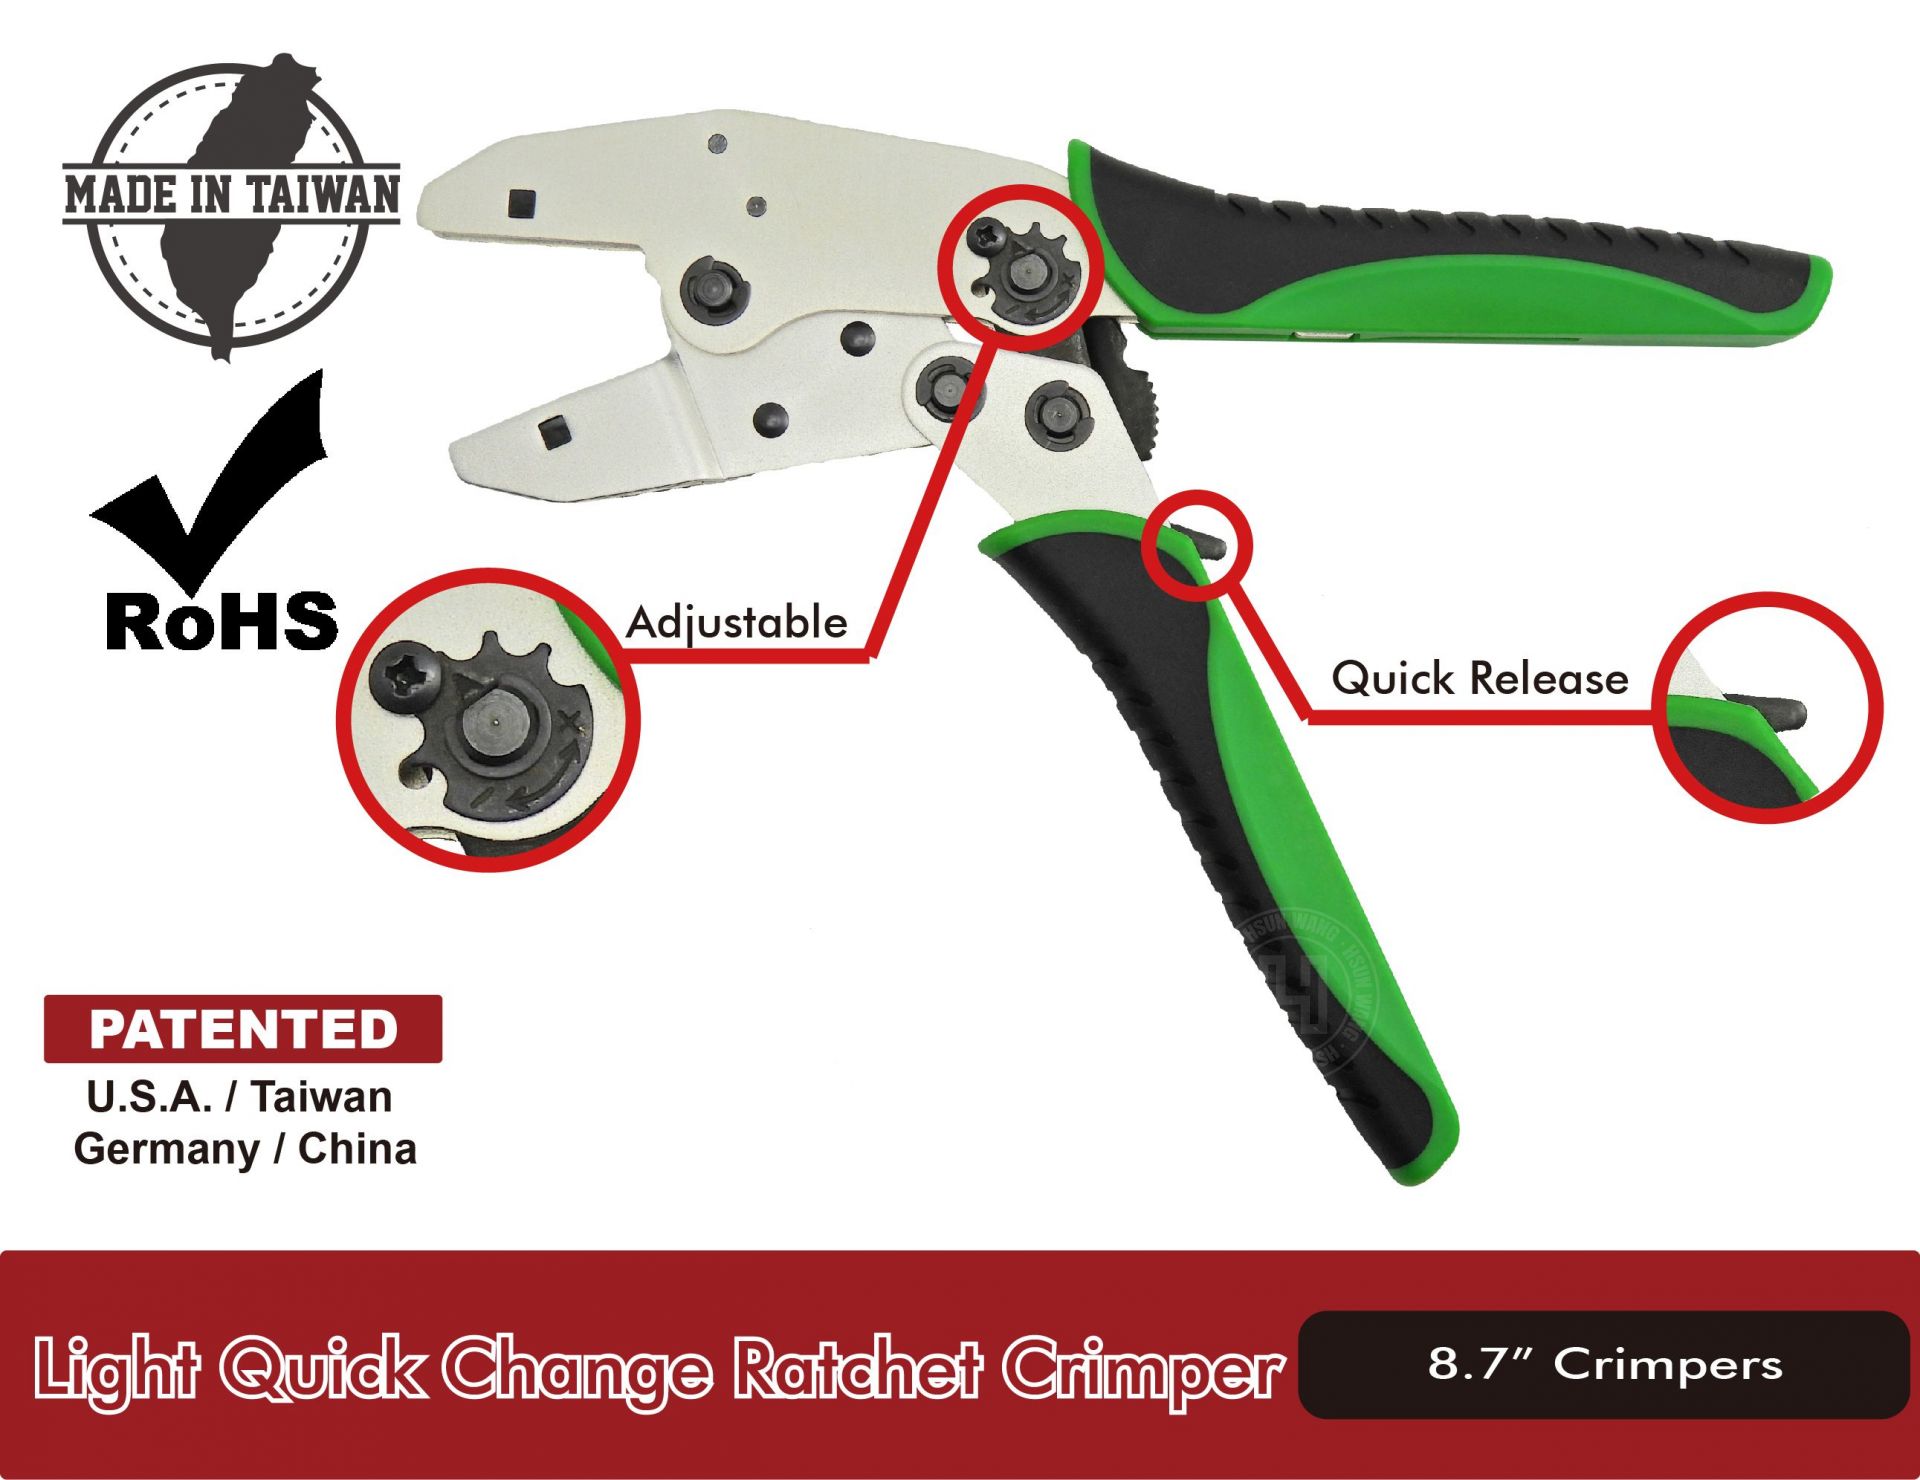 JCI Aluminum Quick Change Ratchet Crimper-JCI Series-Jaw-crimp-crimping-crimp tool-crimping tool-crimp wire-ferrule crimp-ratchet crimp-Taiwan Manufacturer-hsunwang-licrim-hsunwang.com